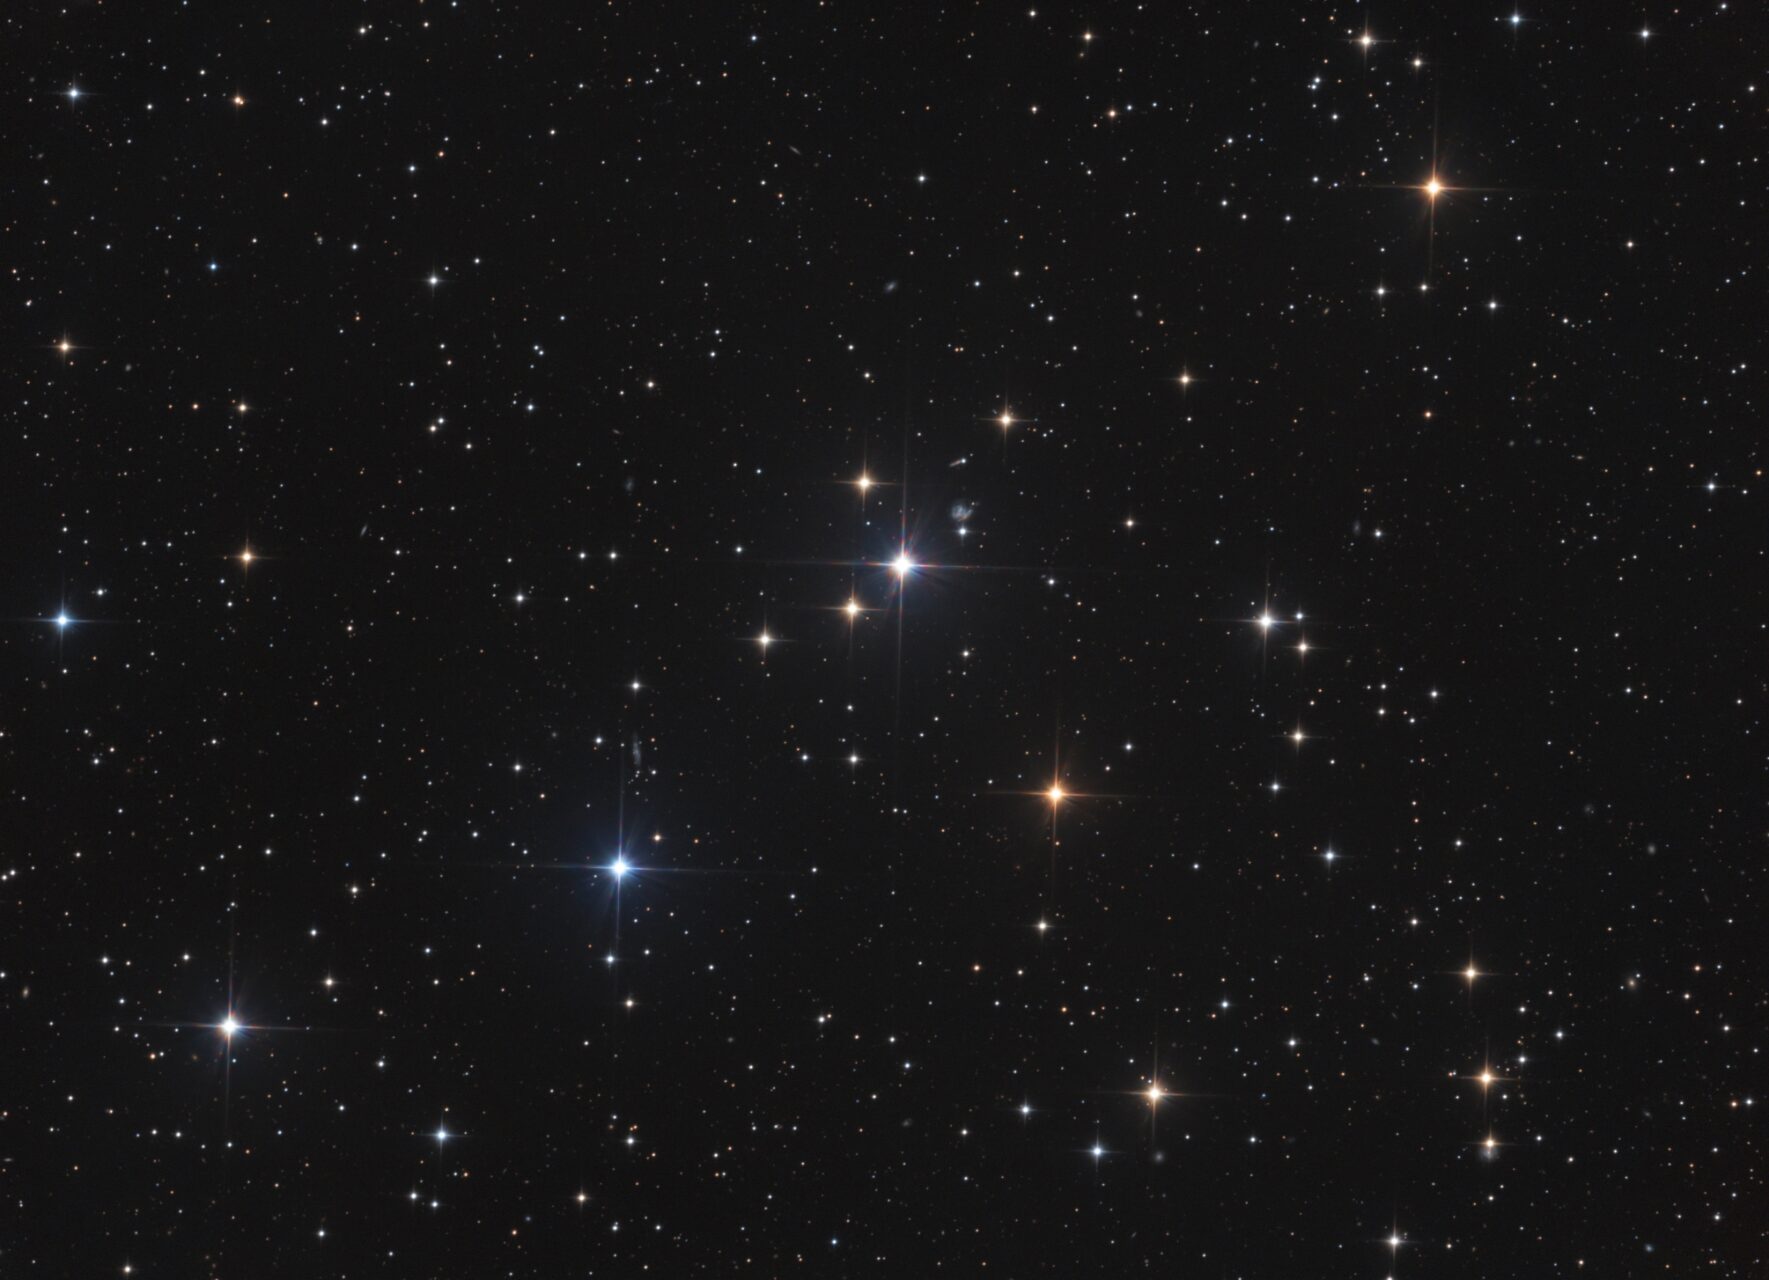 OCL ESO 236-07